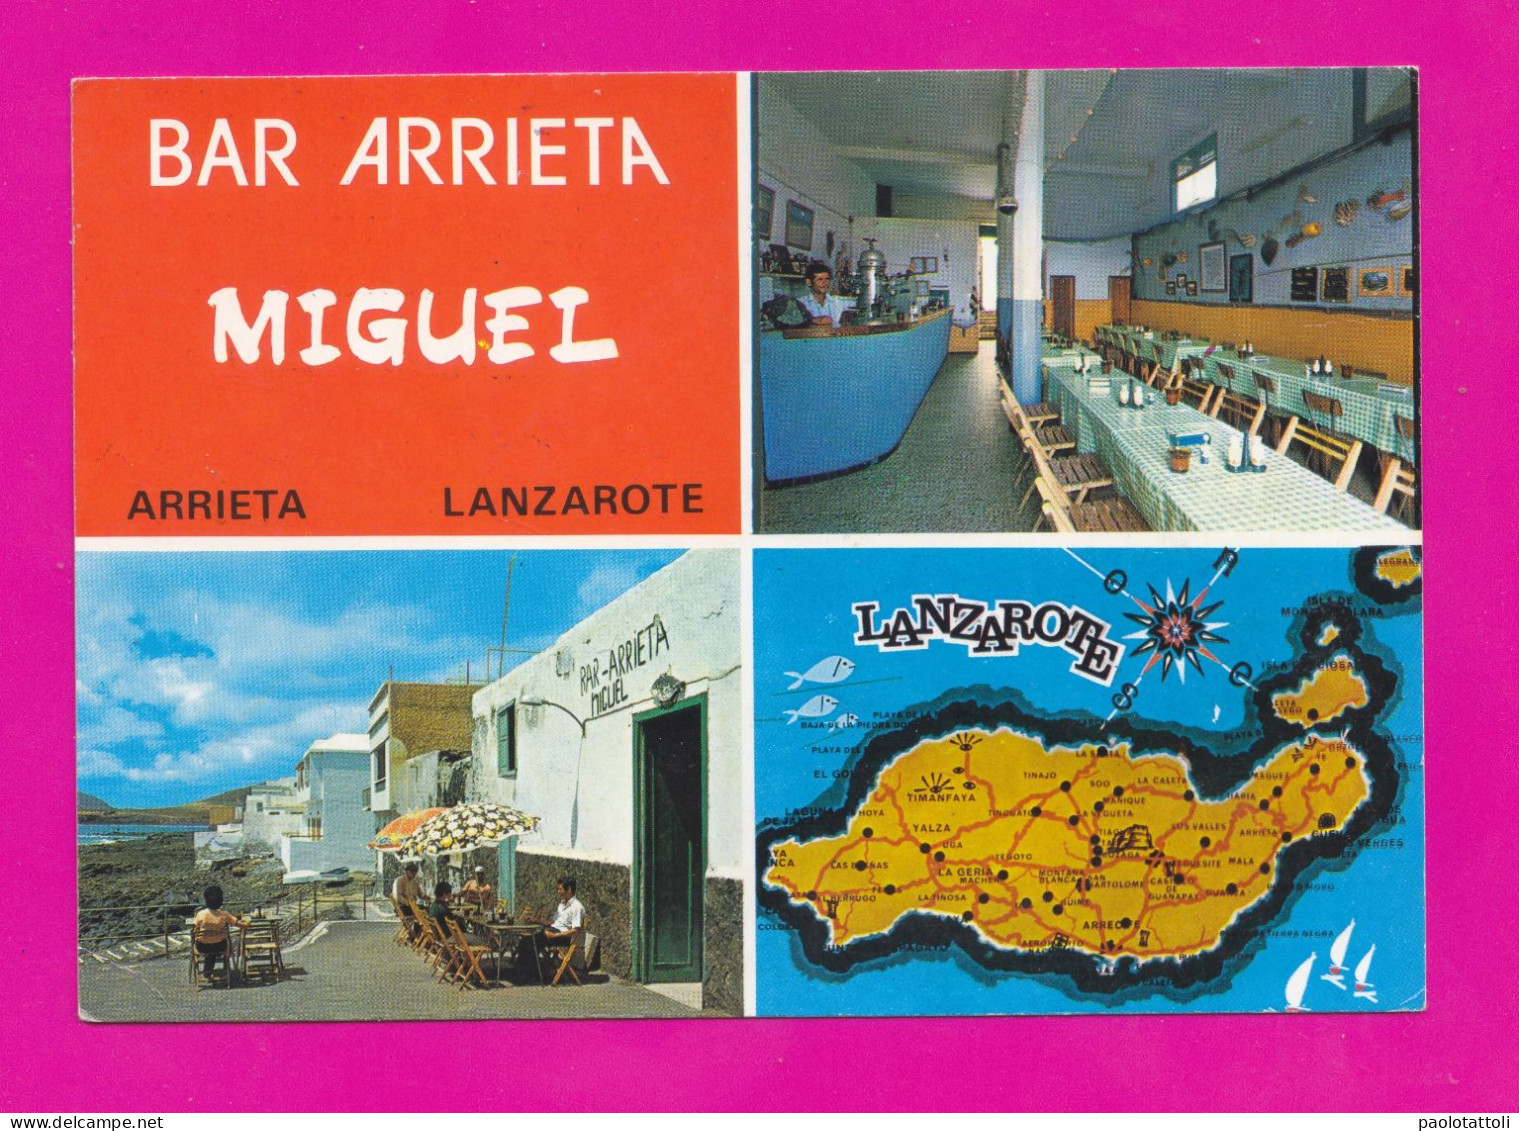 Arrieta, Lanzarote- Bar Arrieta. Miguel Curbelo Torres- New, Standard Size, Divided Back. Ed. Las Afortunadas N° 507 - Lanzarote